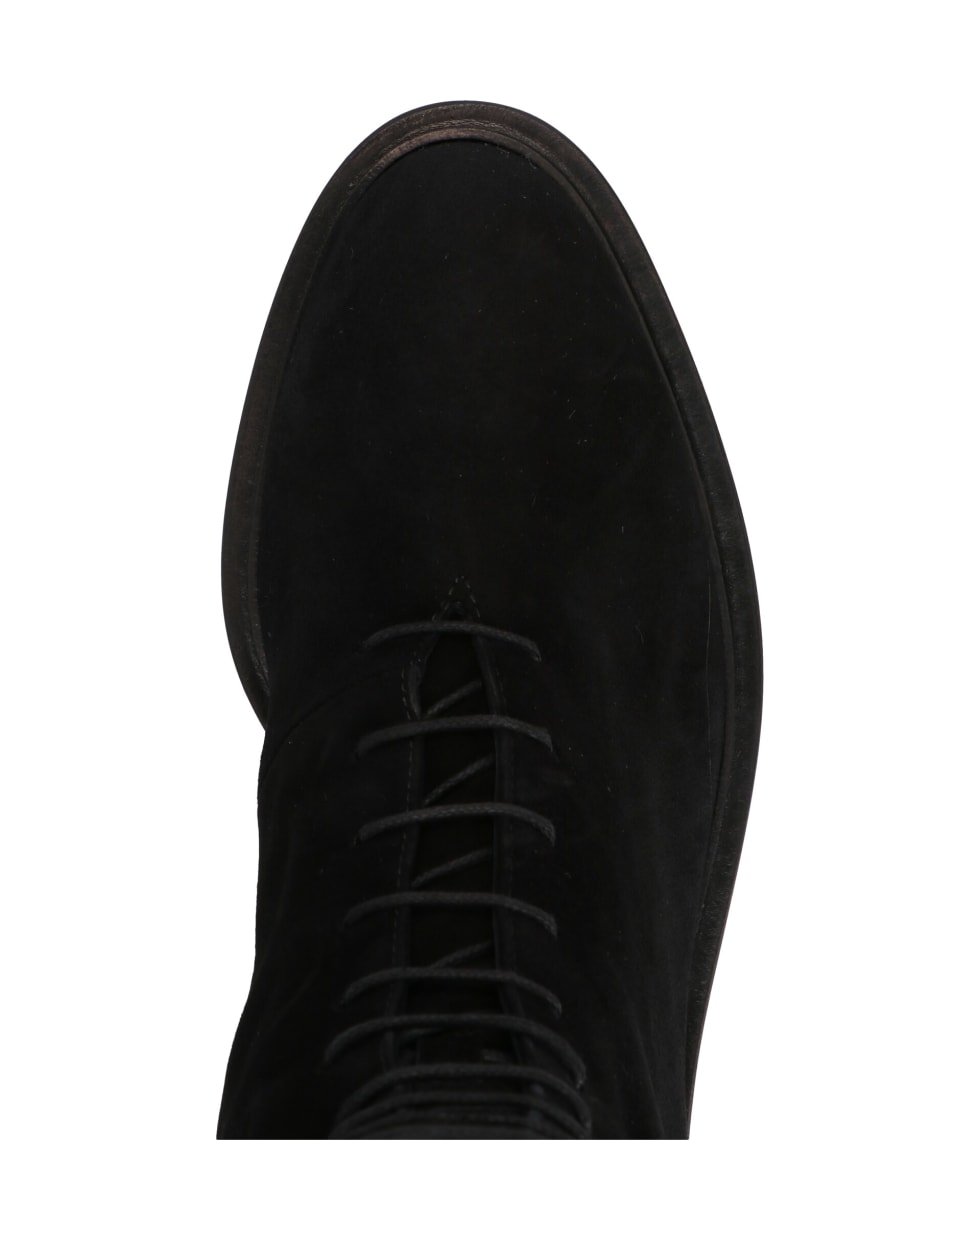 Khaite 'york' Shoes - Black